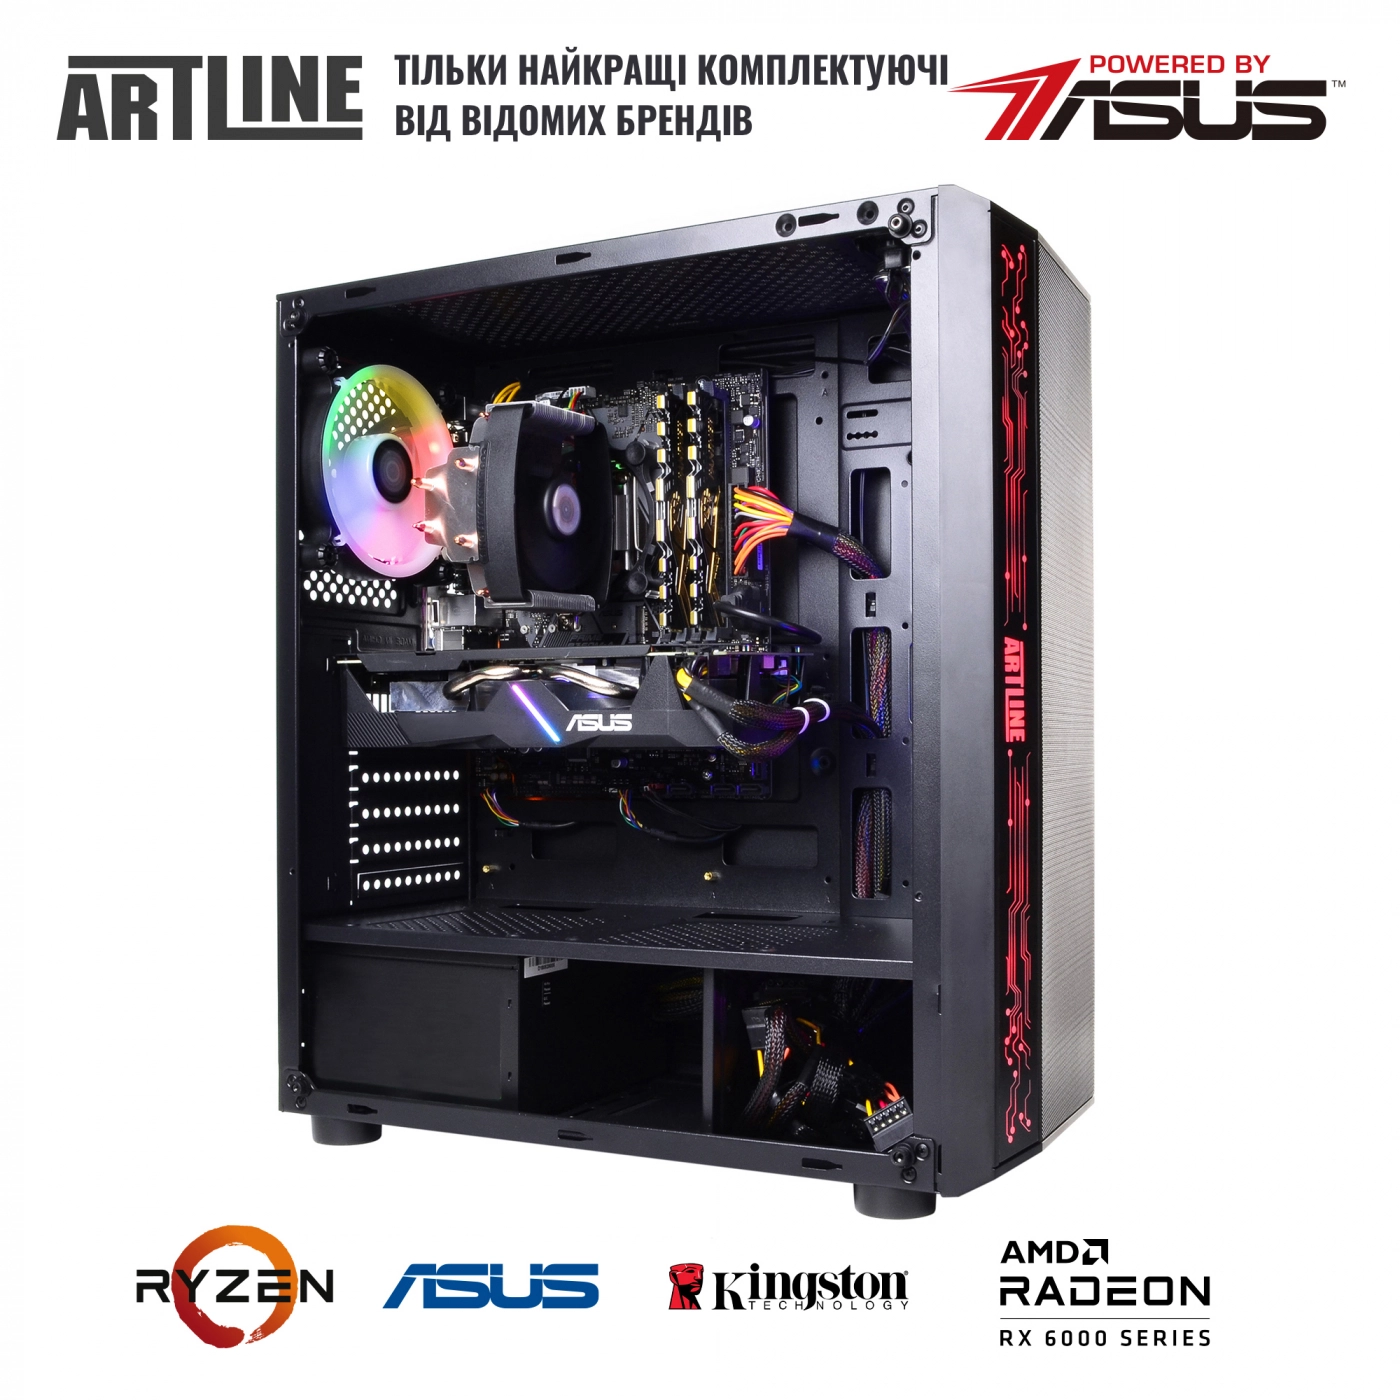 Купить Компьютер ARTLINE Gaming X48v39 - фото 5